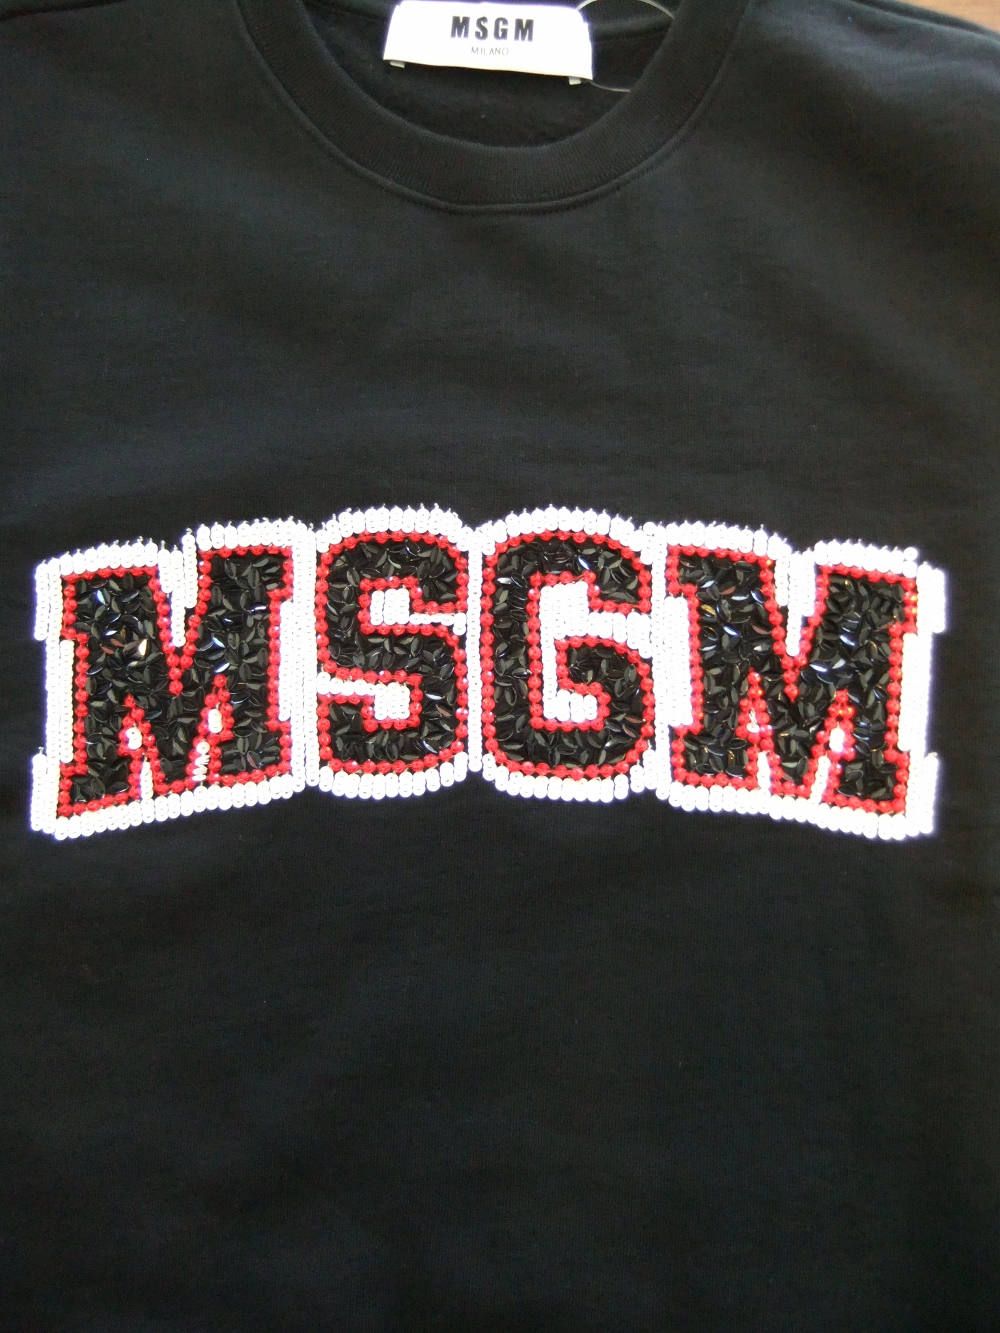 MSGM - 《LADIES》 スパンコール ロゴ スウェット トレーナー (BK